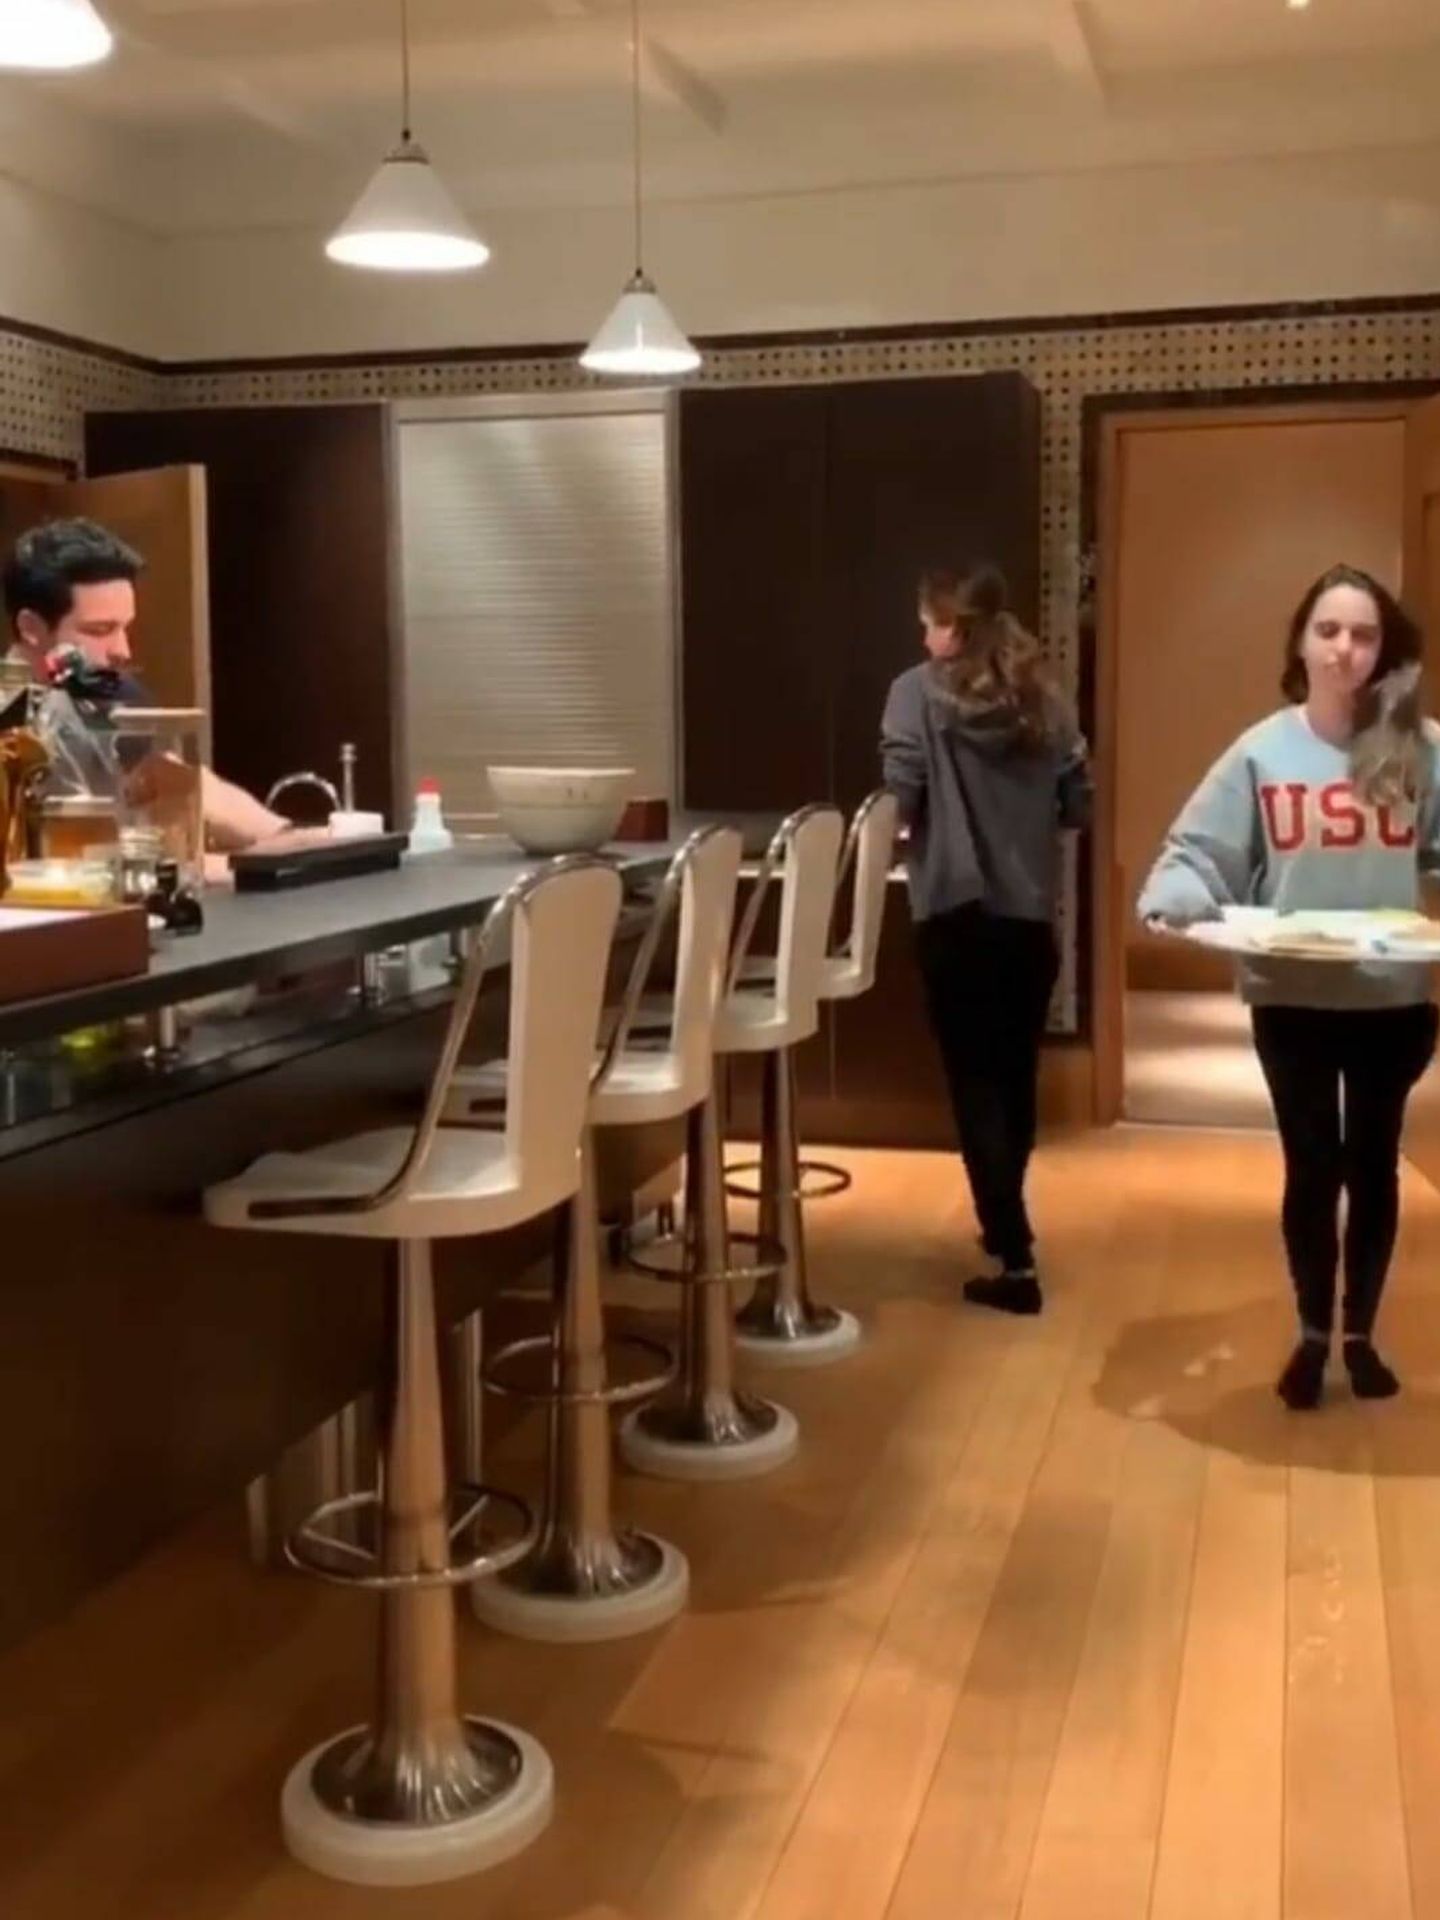 También nos mostró Rania hace años un vídeo en la cocina de su hogar con su familia. (Instagram/@queenrania)